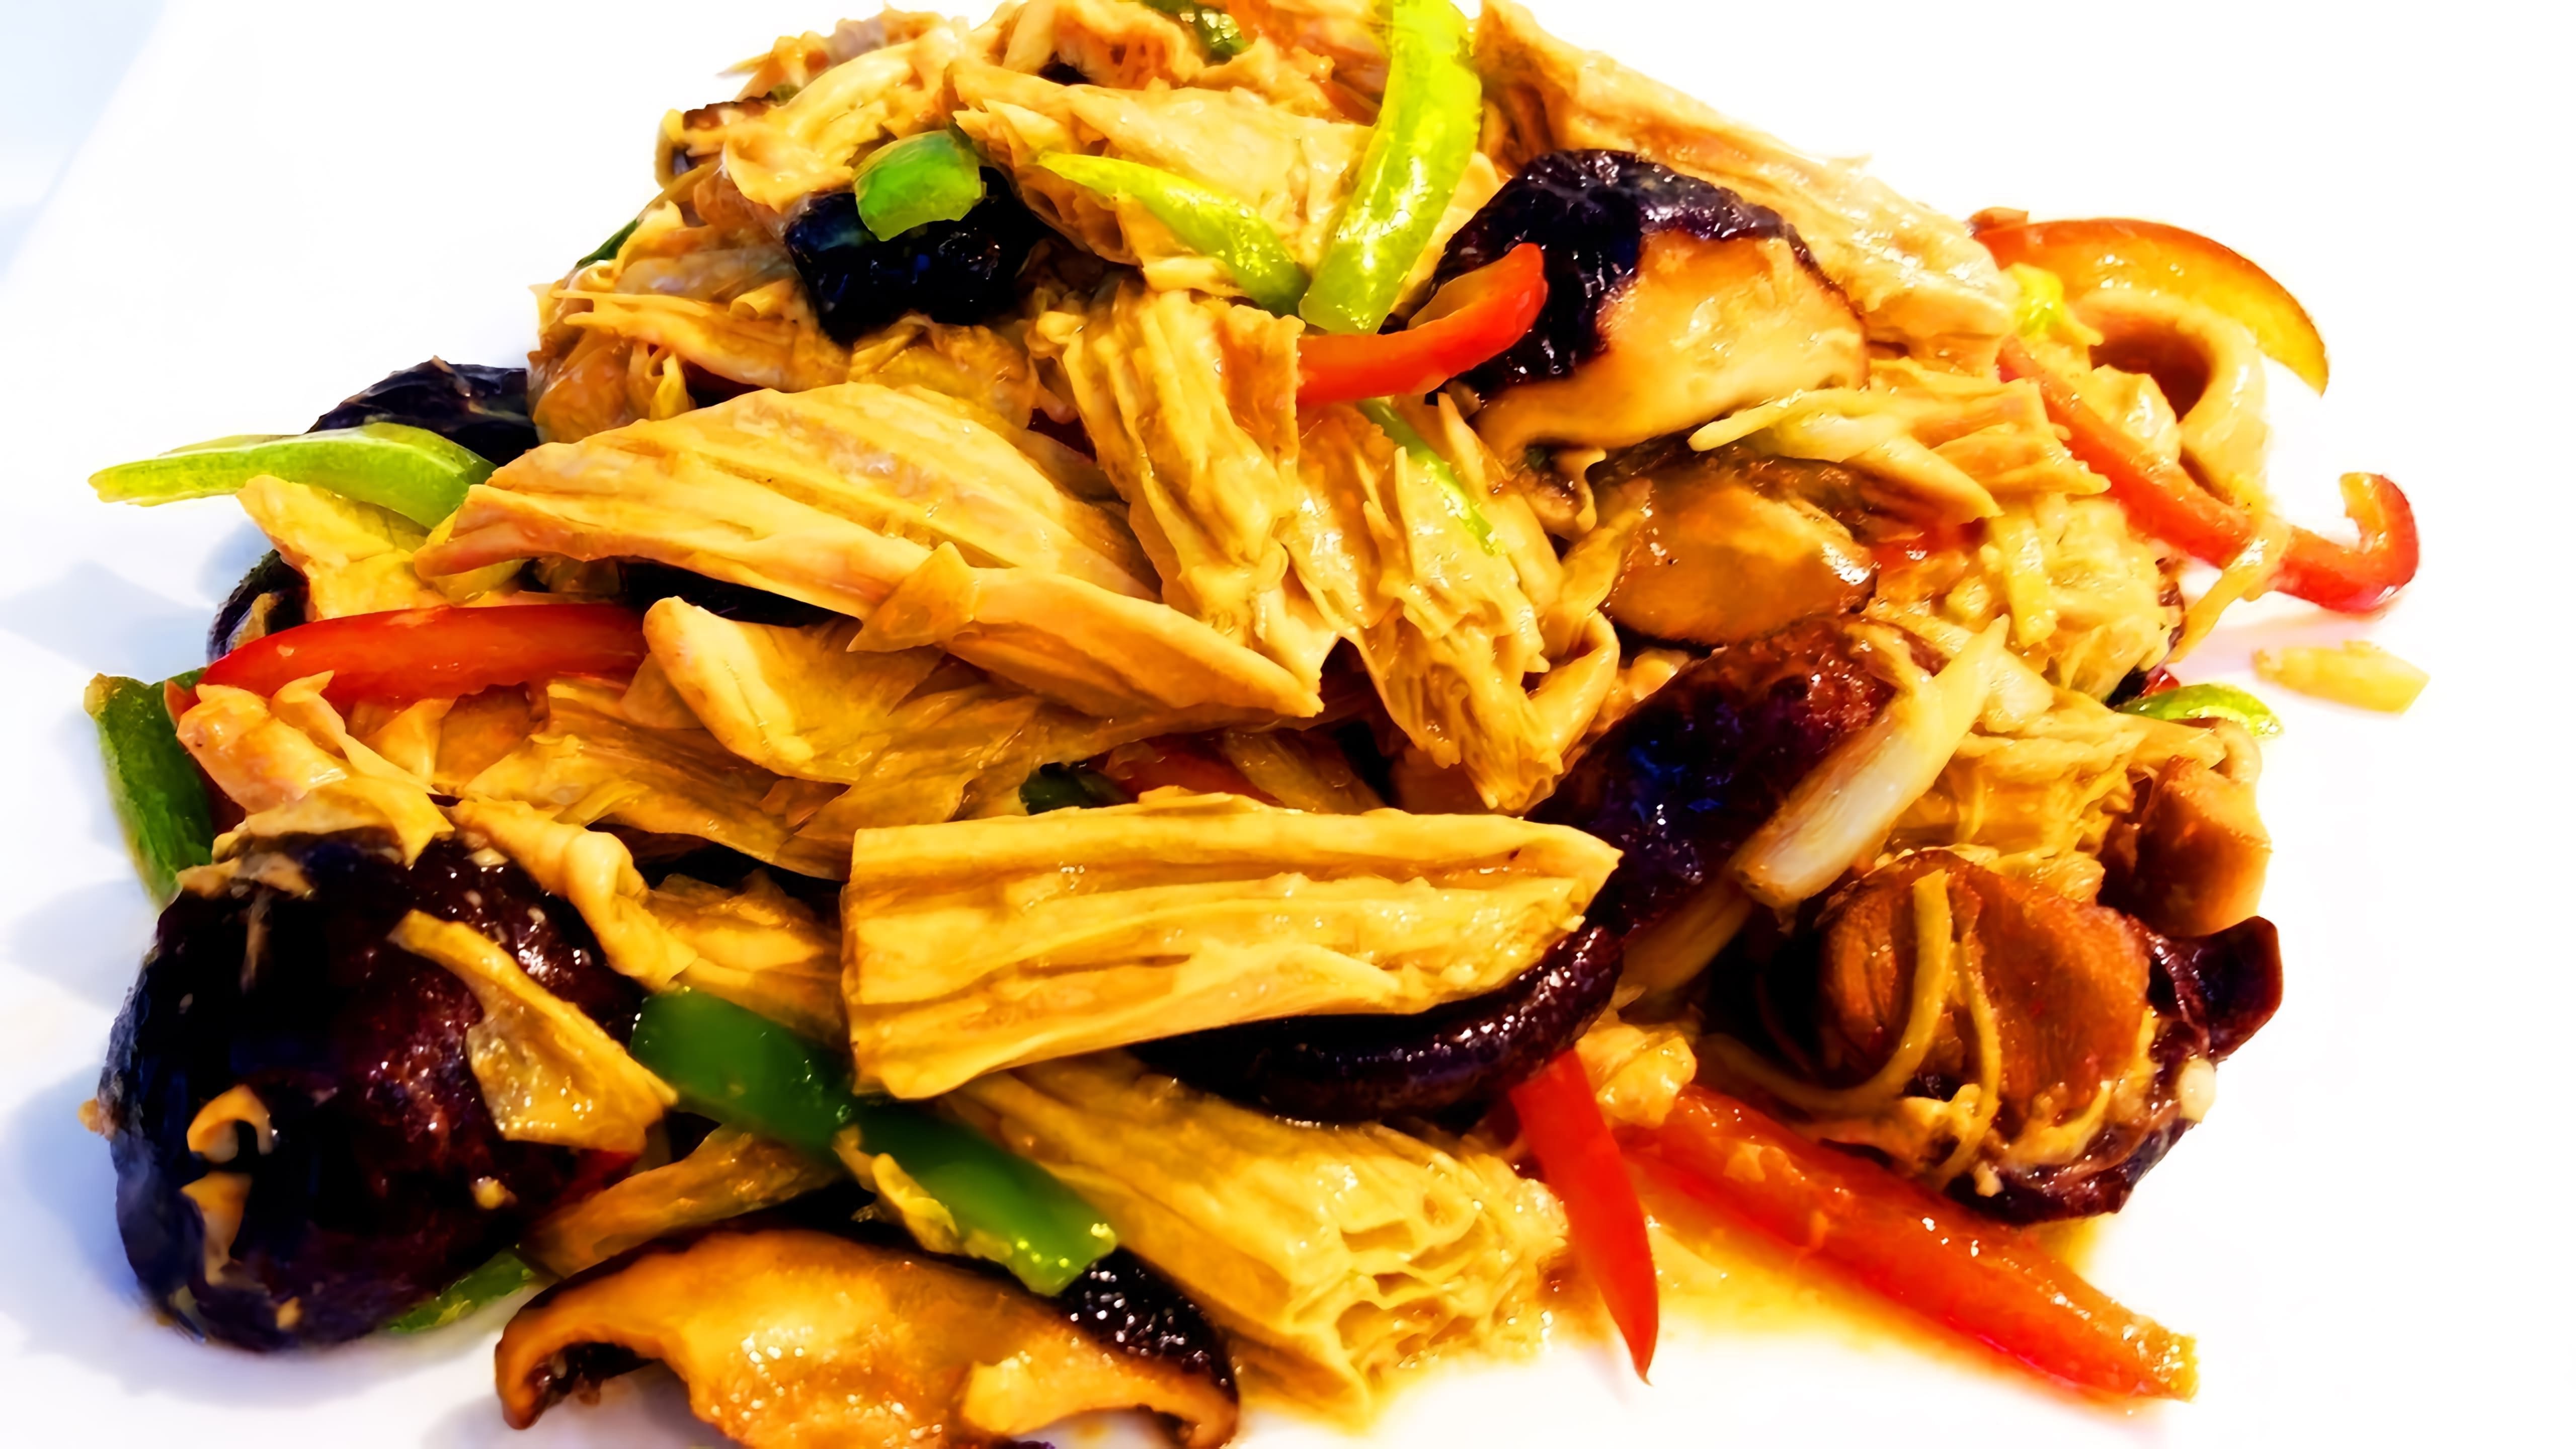 В этом видео демонстрируется процесс приготовления китайского блюда - жареной соевой спаржи с грибами сянгу